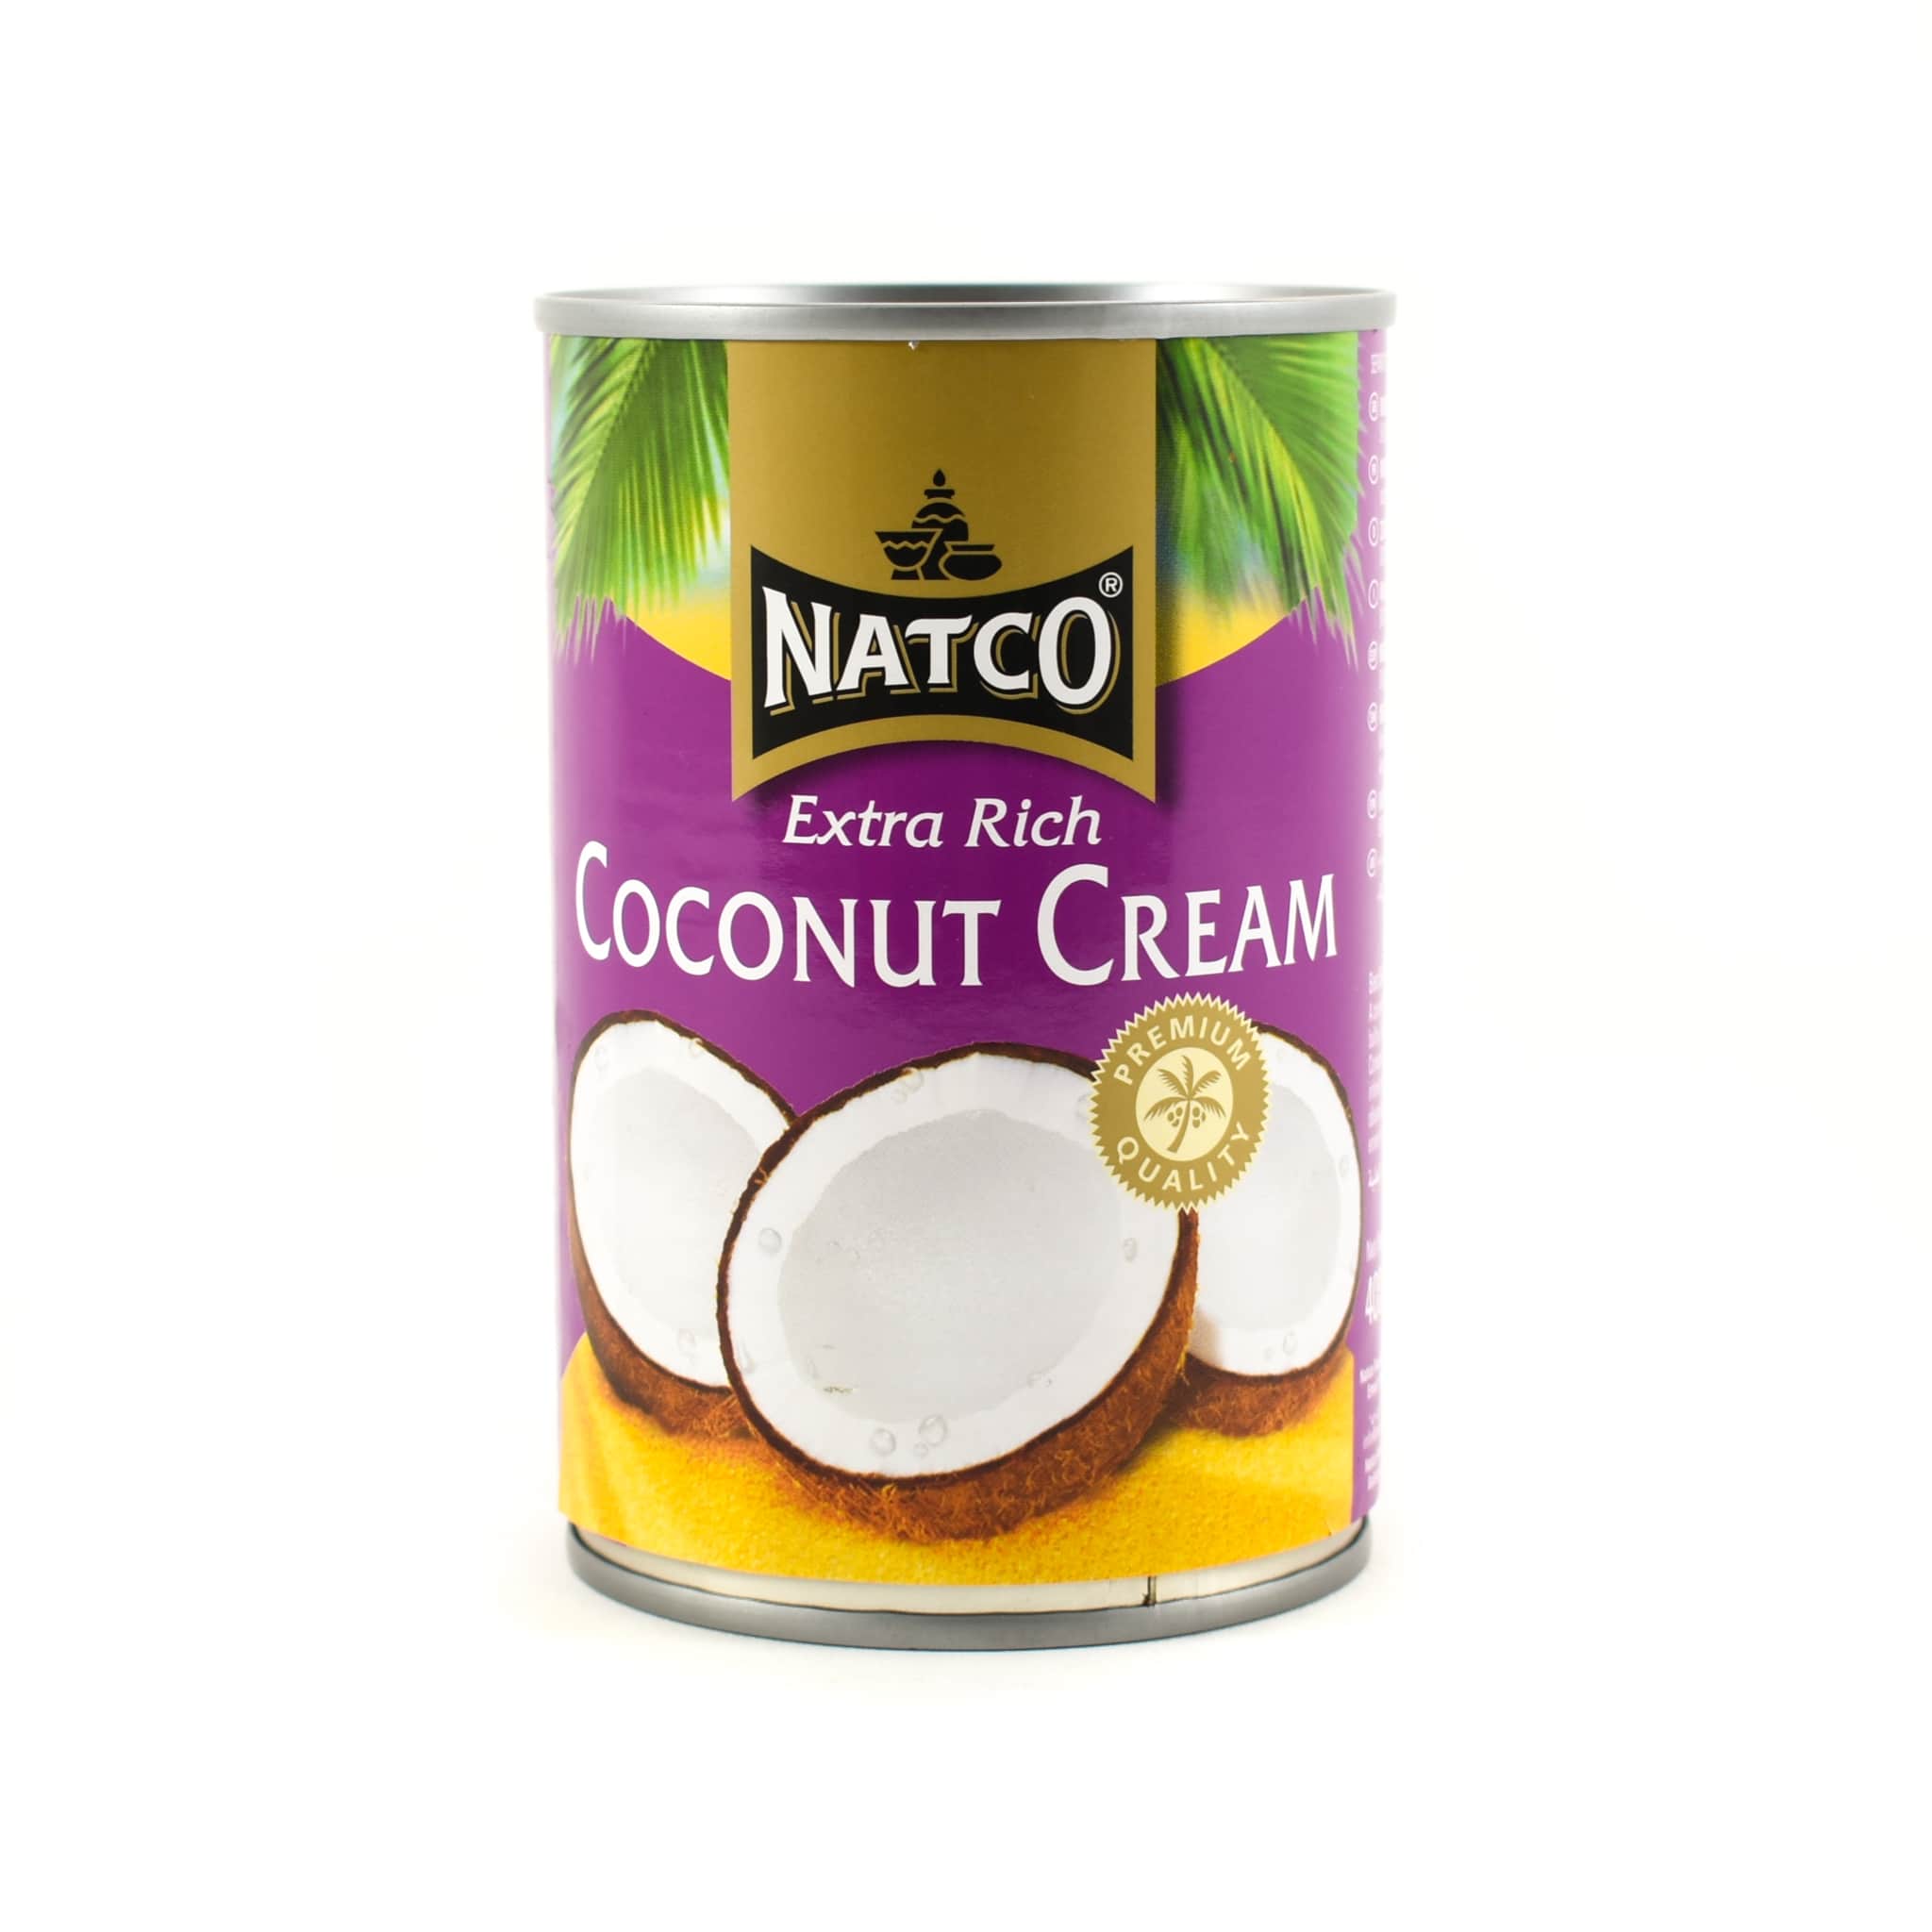 Natco Extra Rich Coconut Cream 400g